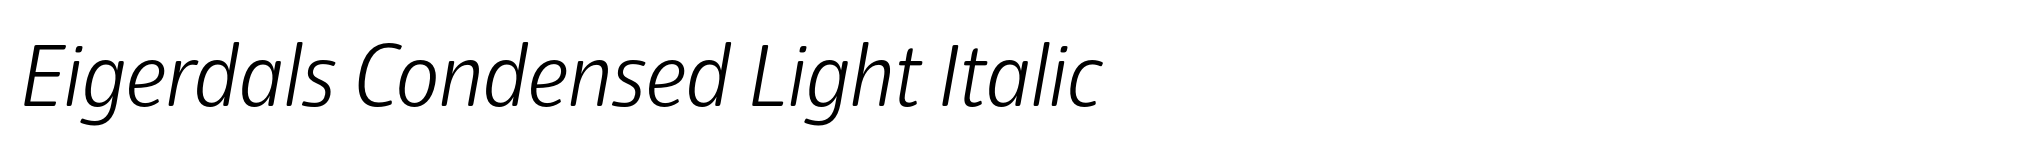 Eigerdals Condensed Light Italic image